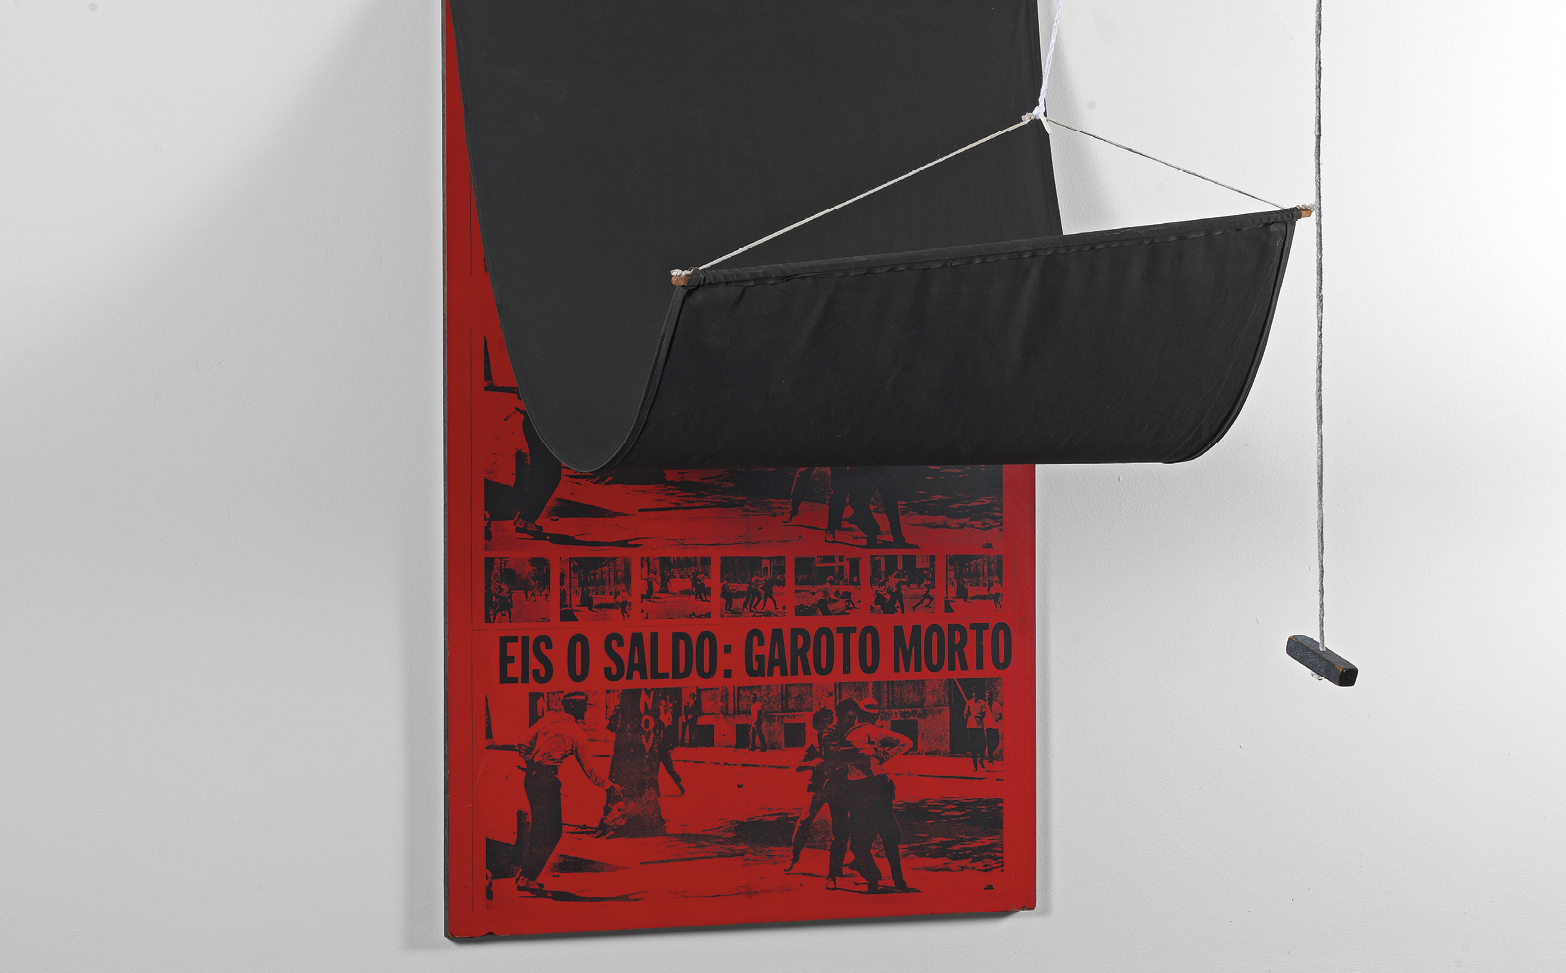 Fotografia. Painel preso à parede com uma cortina levantada sobre ele e que apresenta cor vermelha com quadrinhos em cor preta e onde está escrito EIS O SALDO: GAROTO MORTO.